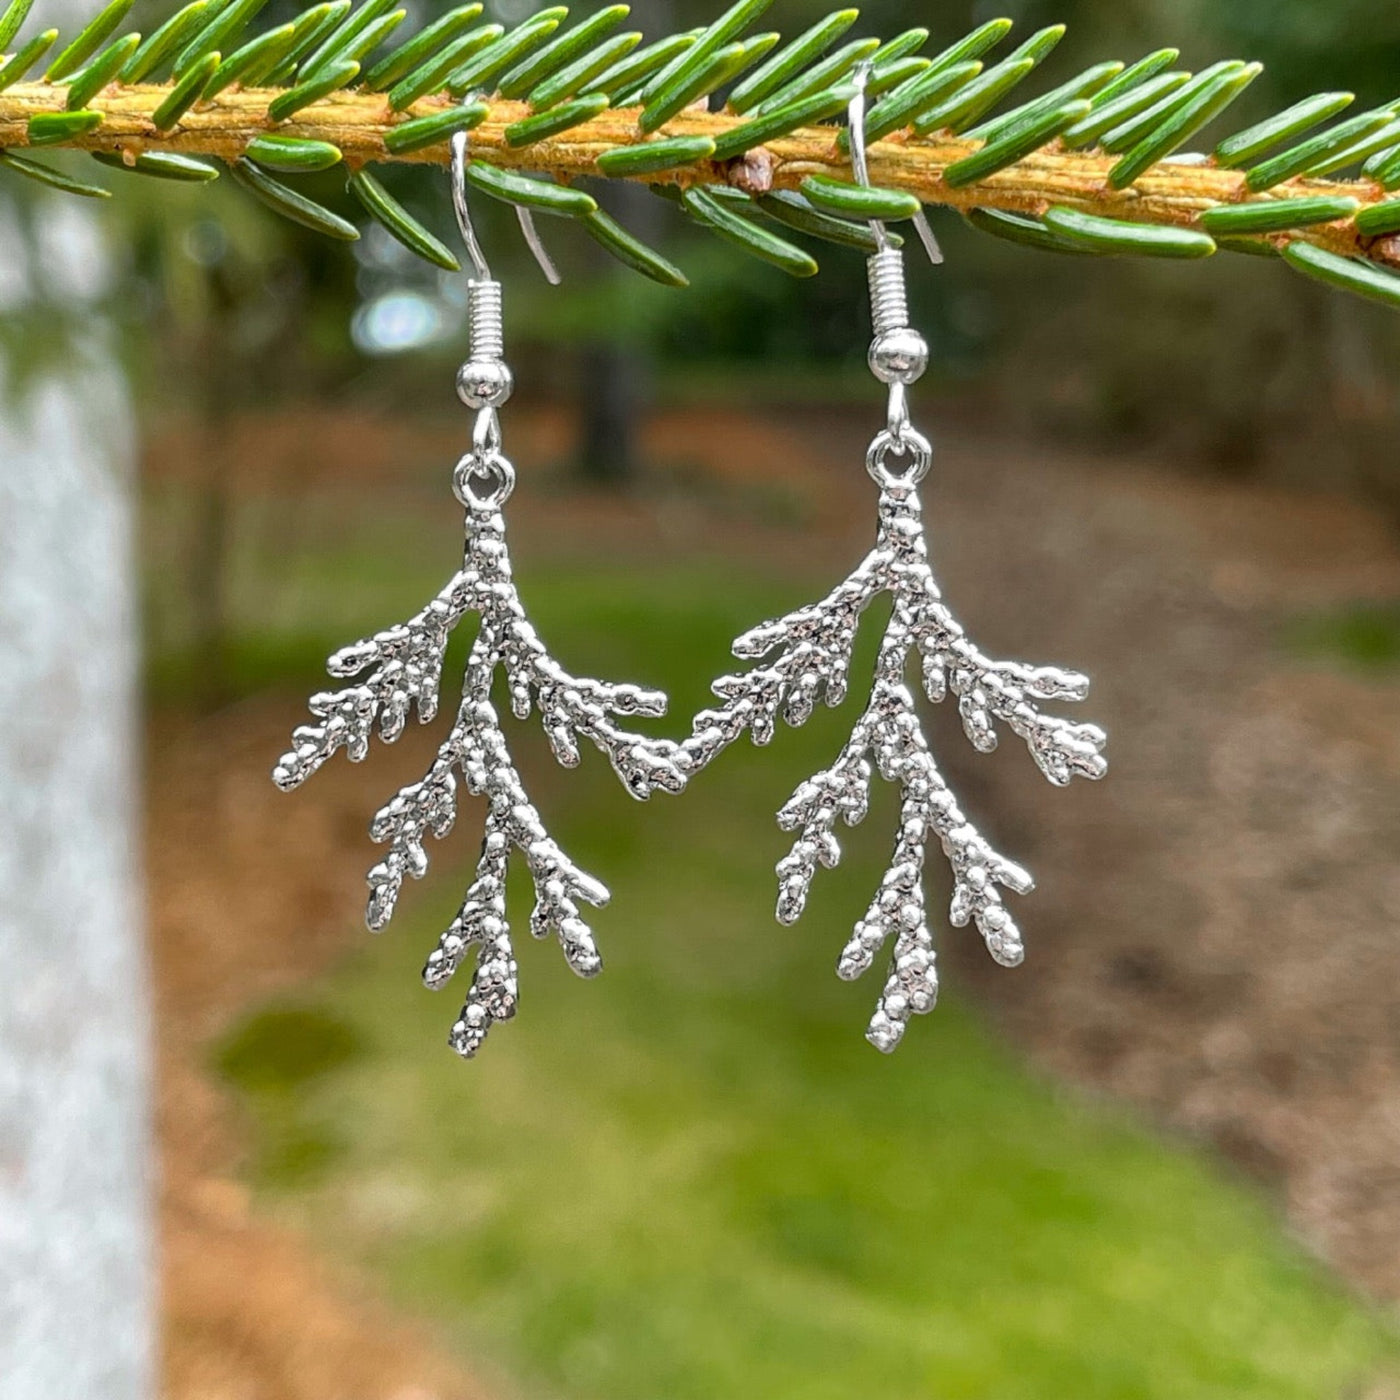 Pine Branch Earrings